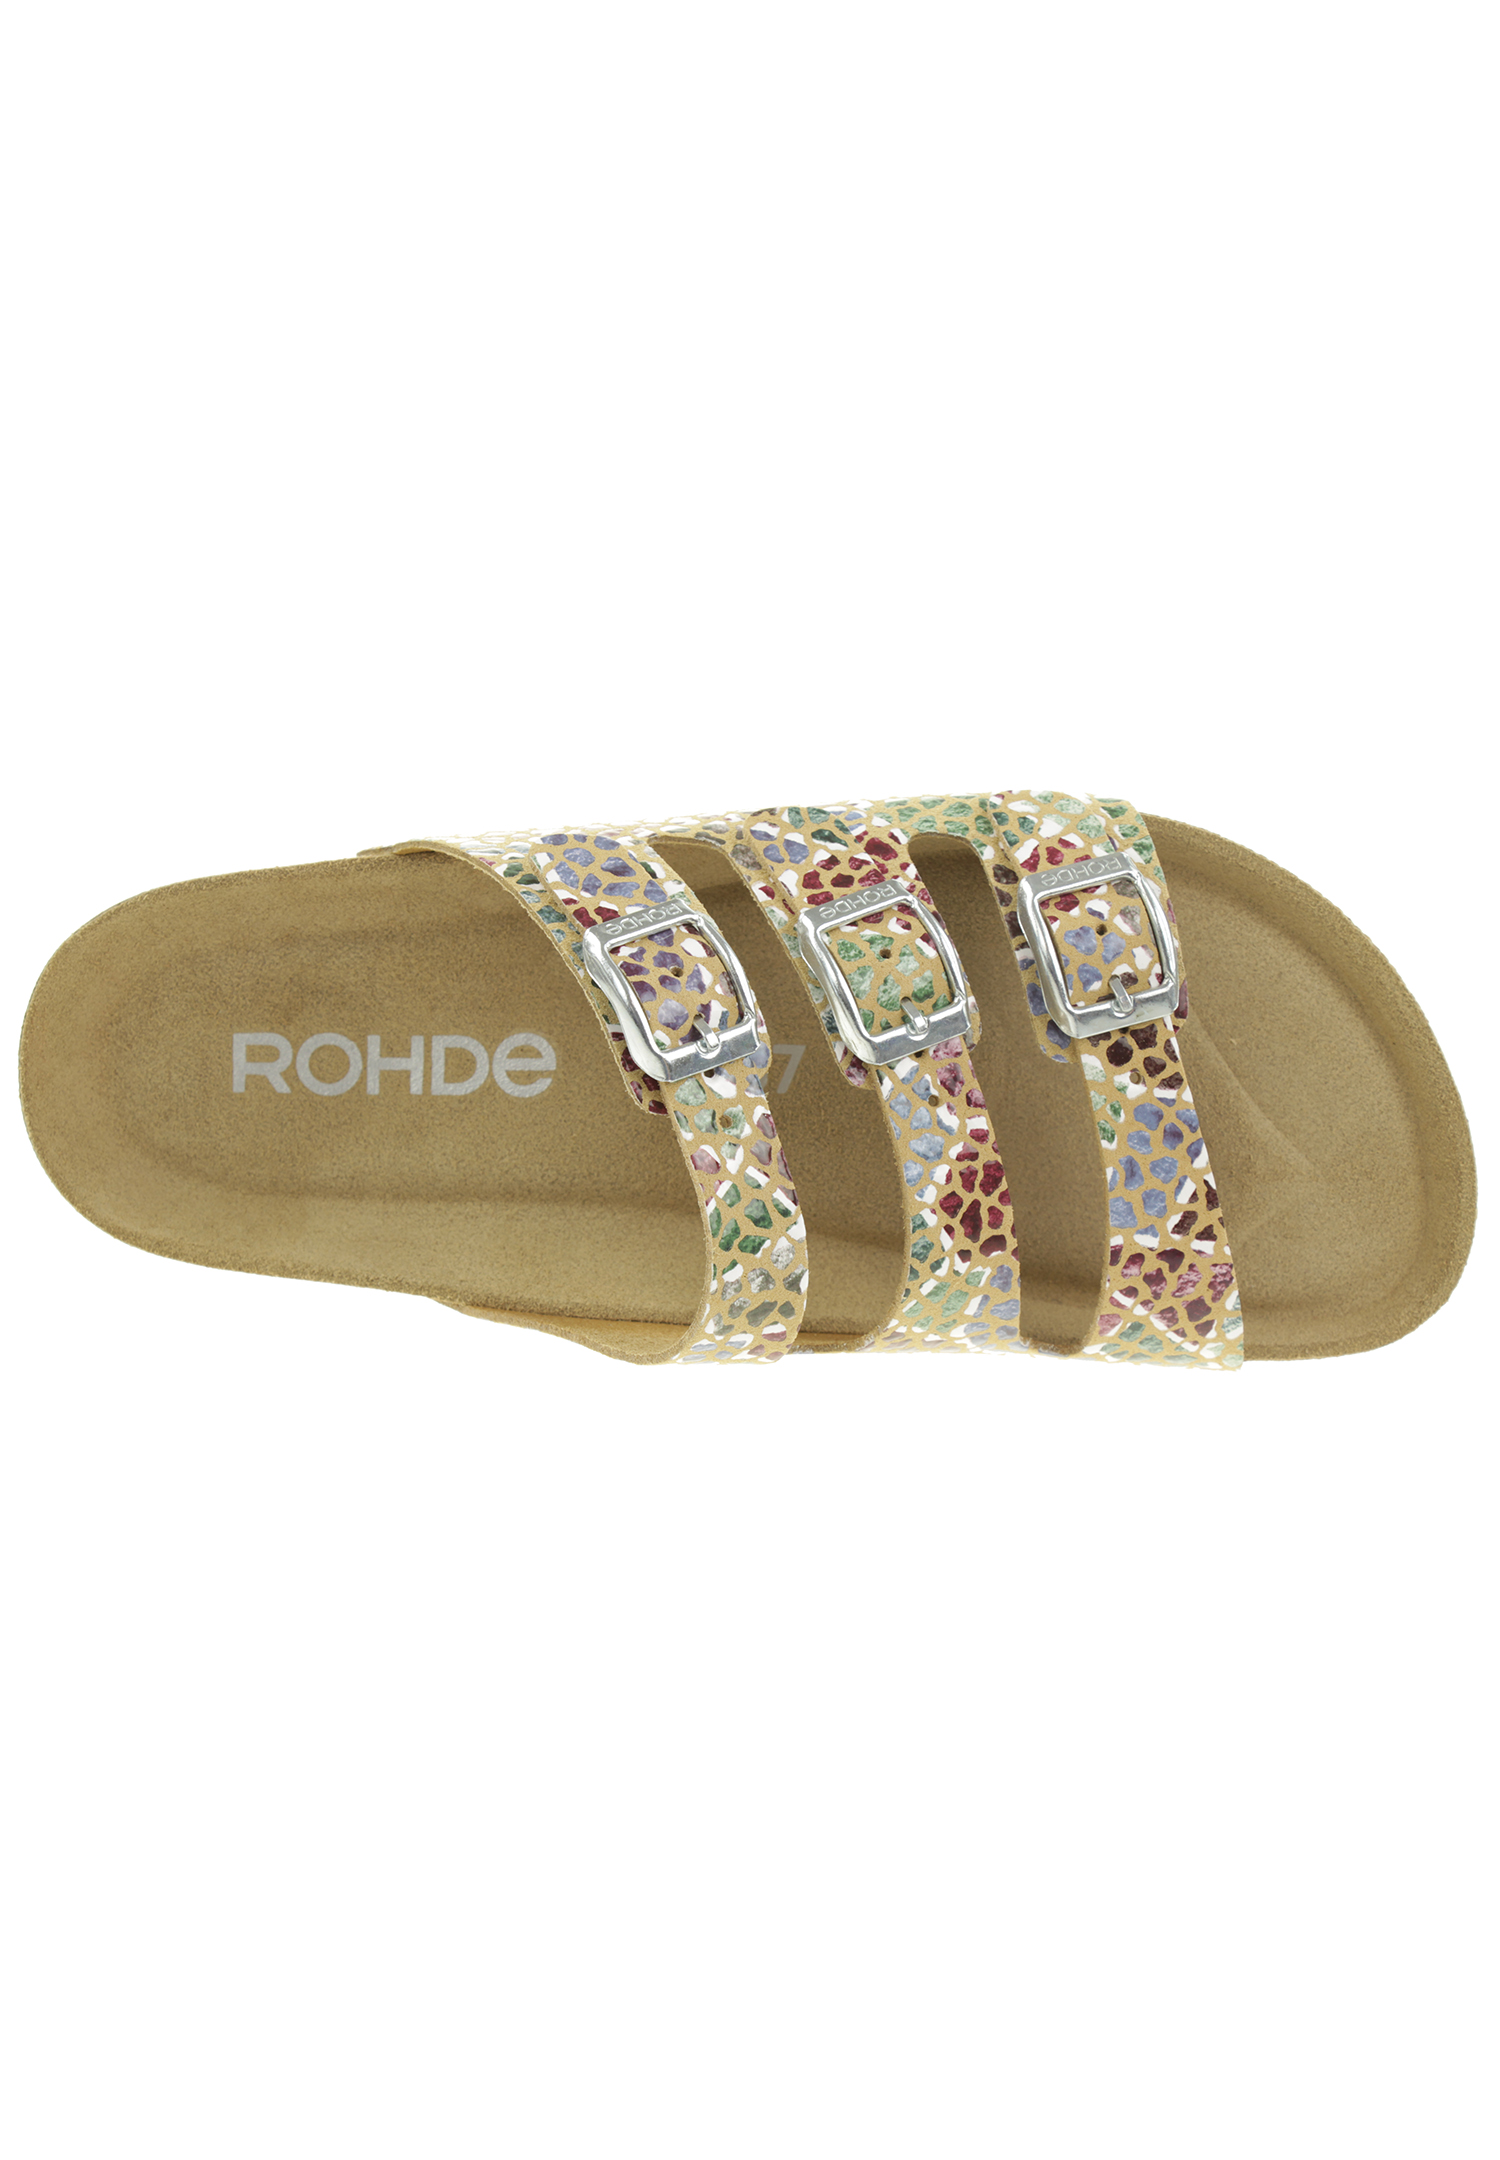 Rohde Sunnys N´13 Damen Pantolette Hausschuhe Sandale  5620 Camel